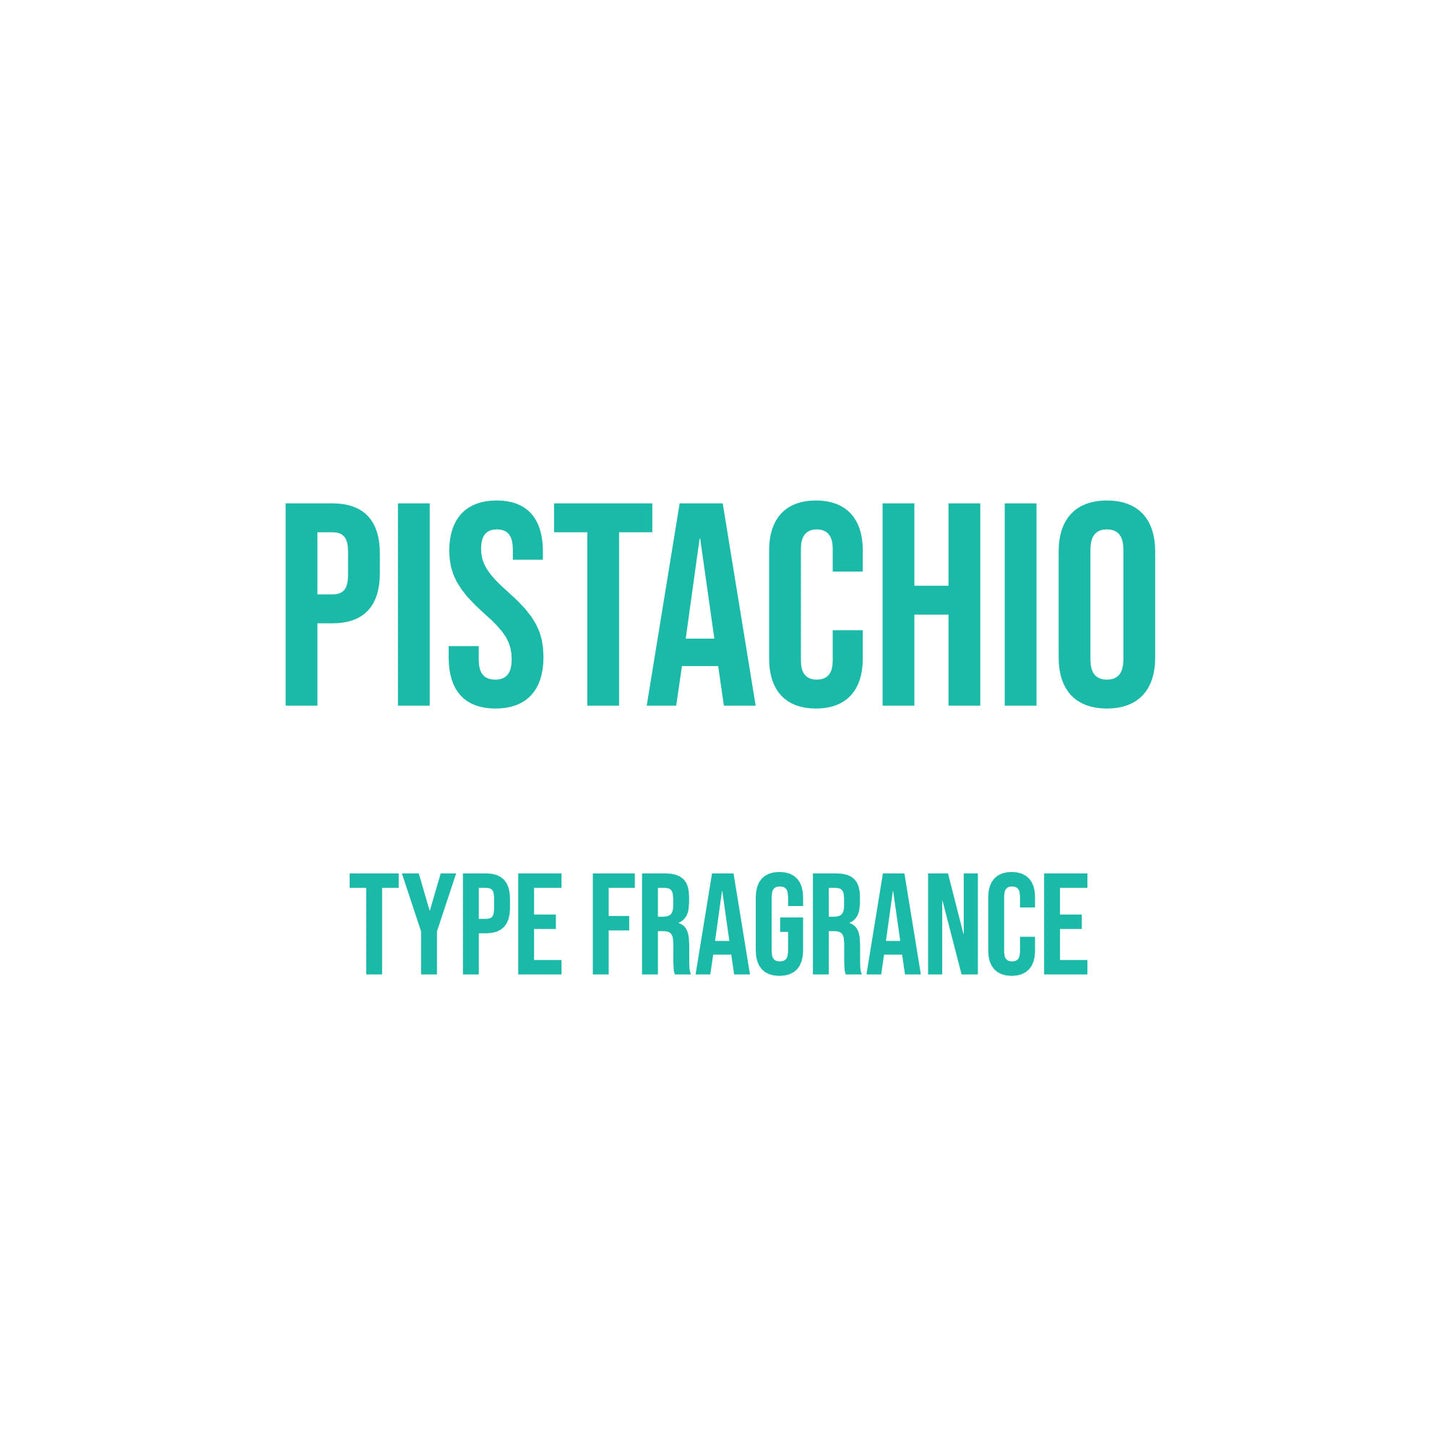 Pistachio Type Fragrance